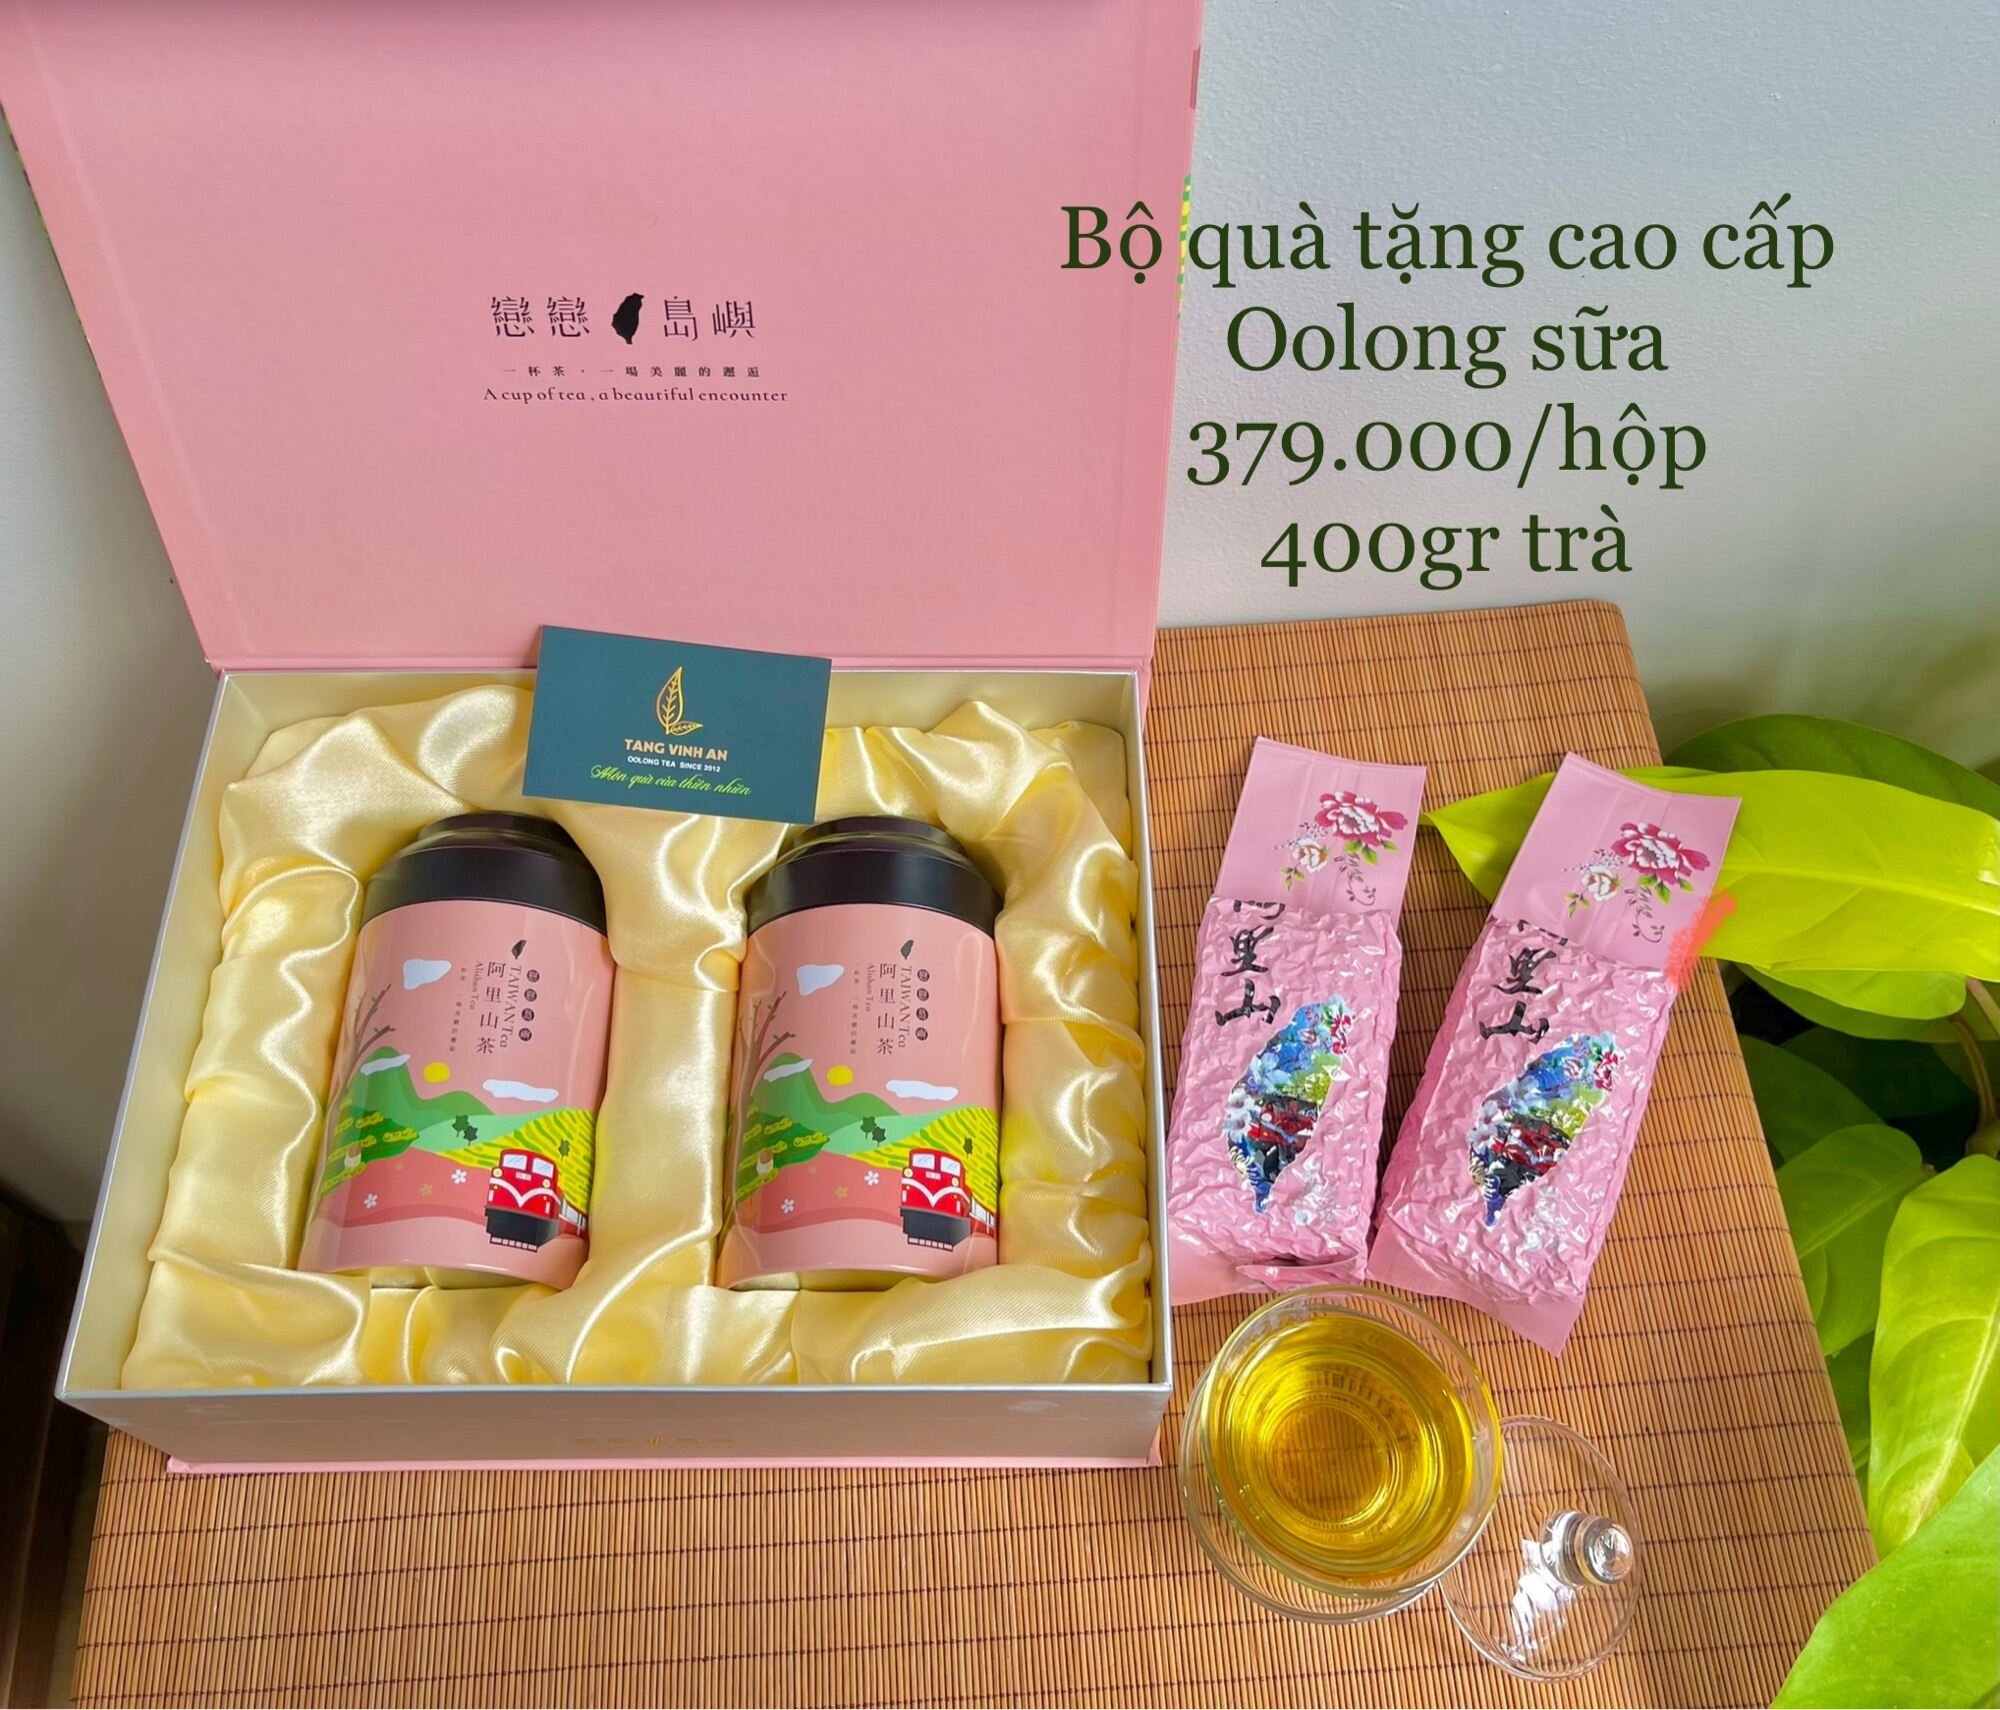 Hộp quà tặng trà Oolong cao cấp, Oolong sữa, 400gr trà